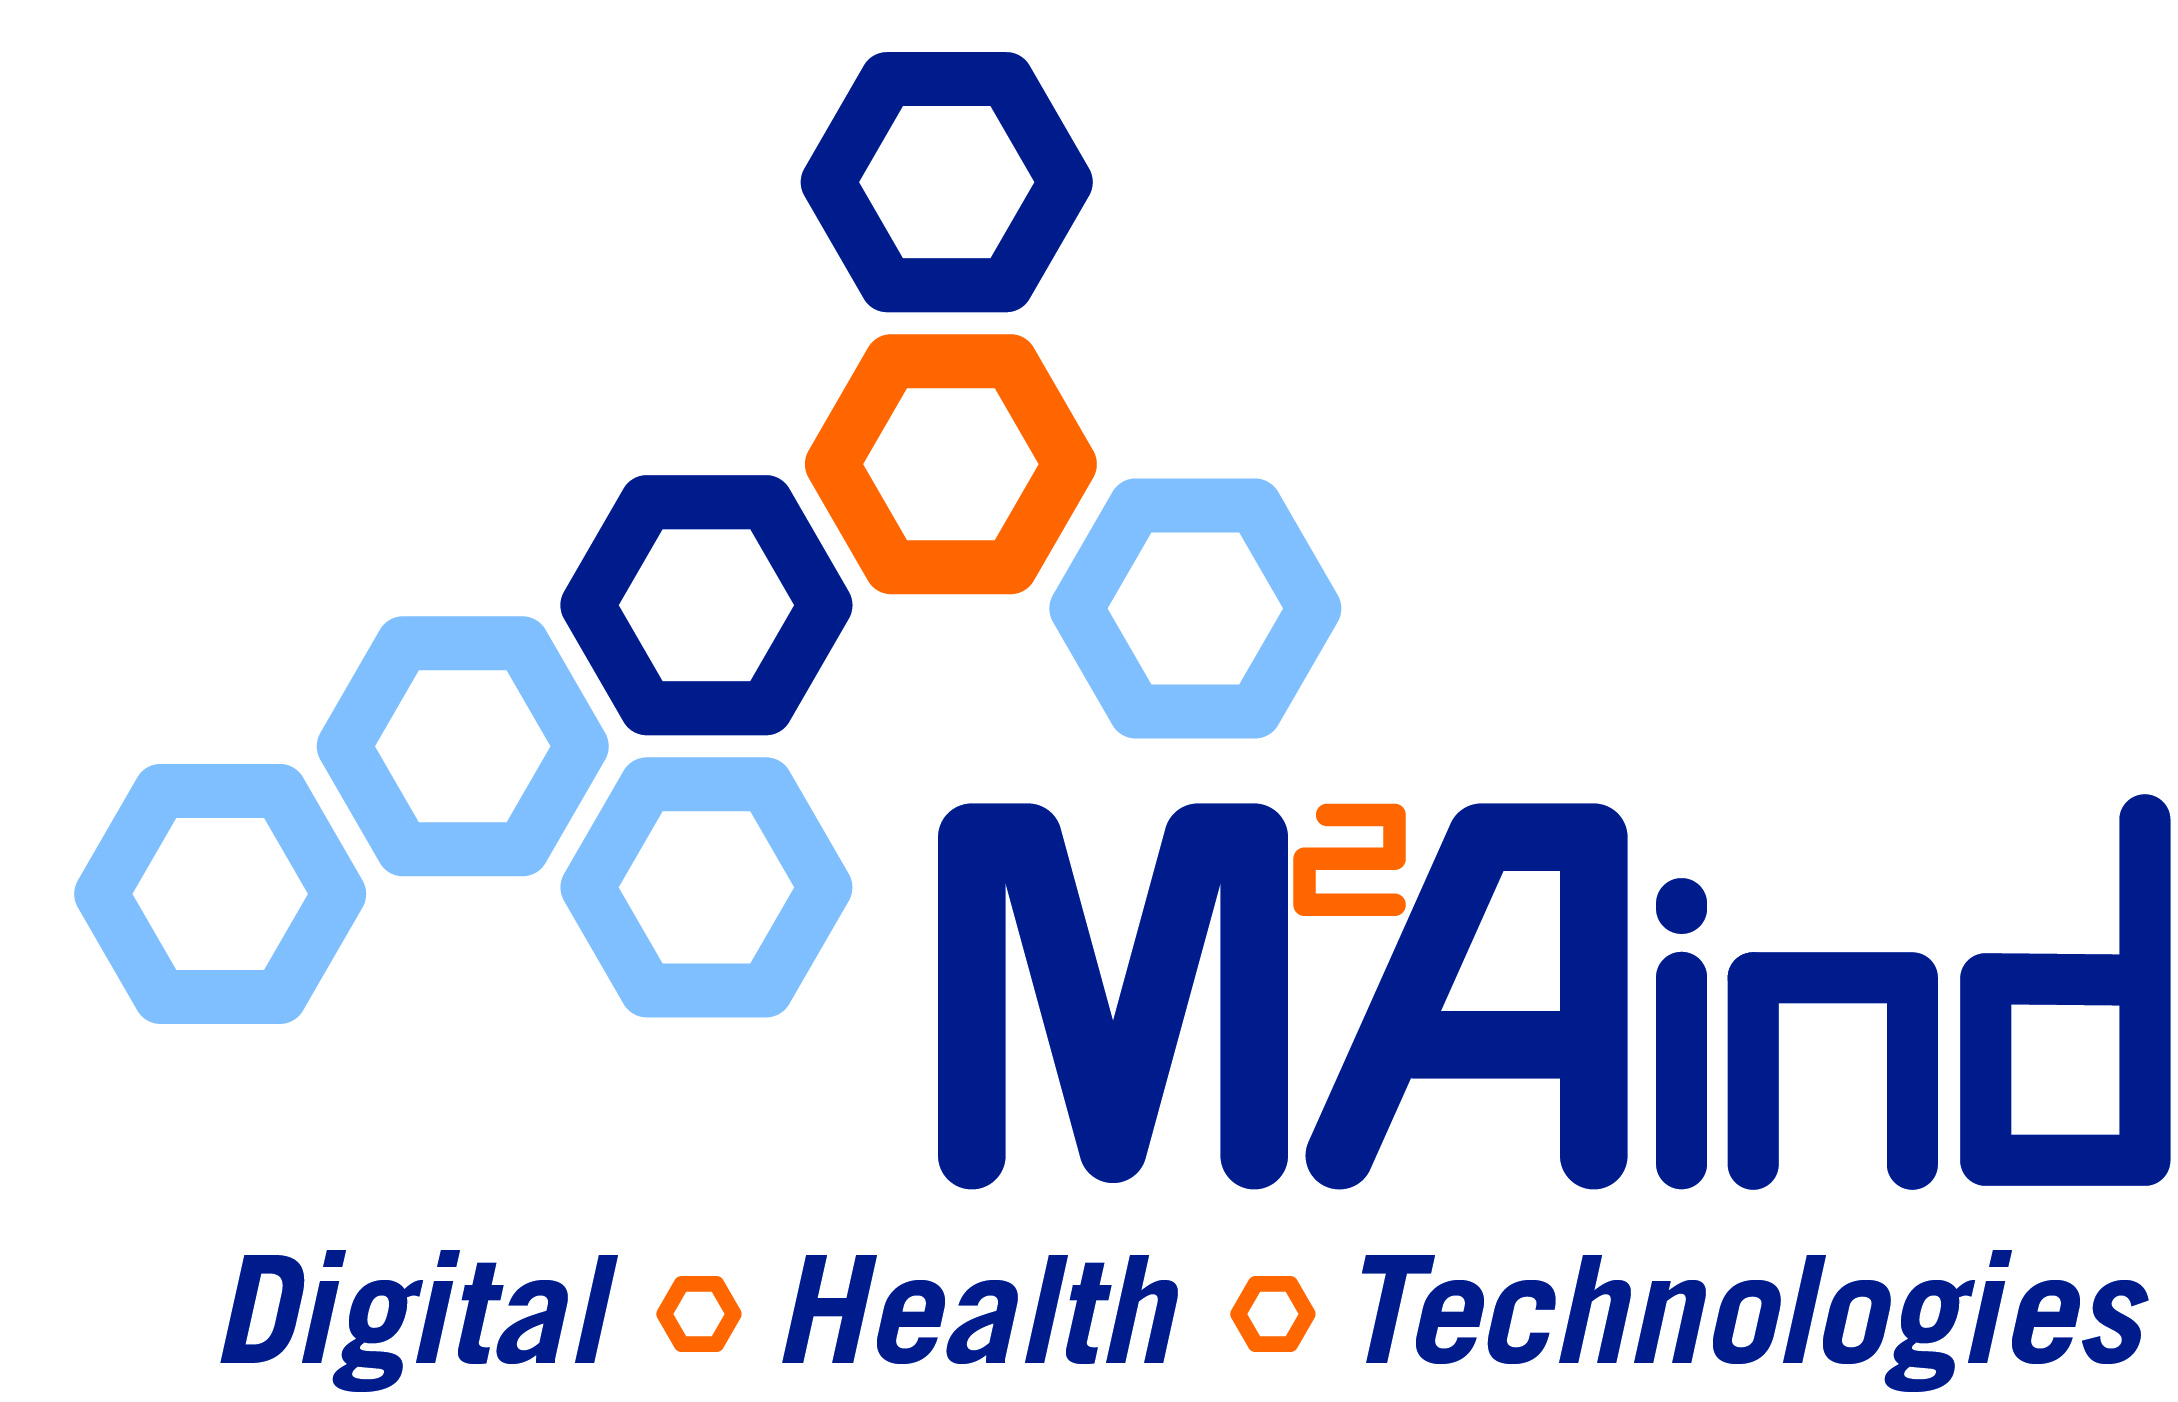 Abbildung des M2Aind Logos mit den drei Begriffen Digital , Health und Technologies darunter